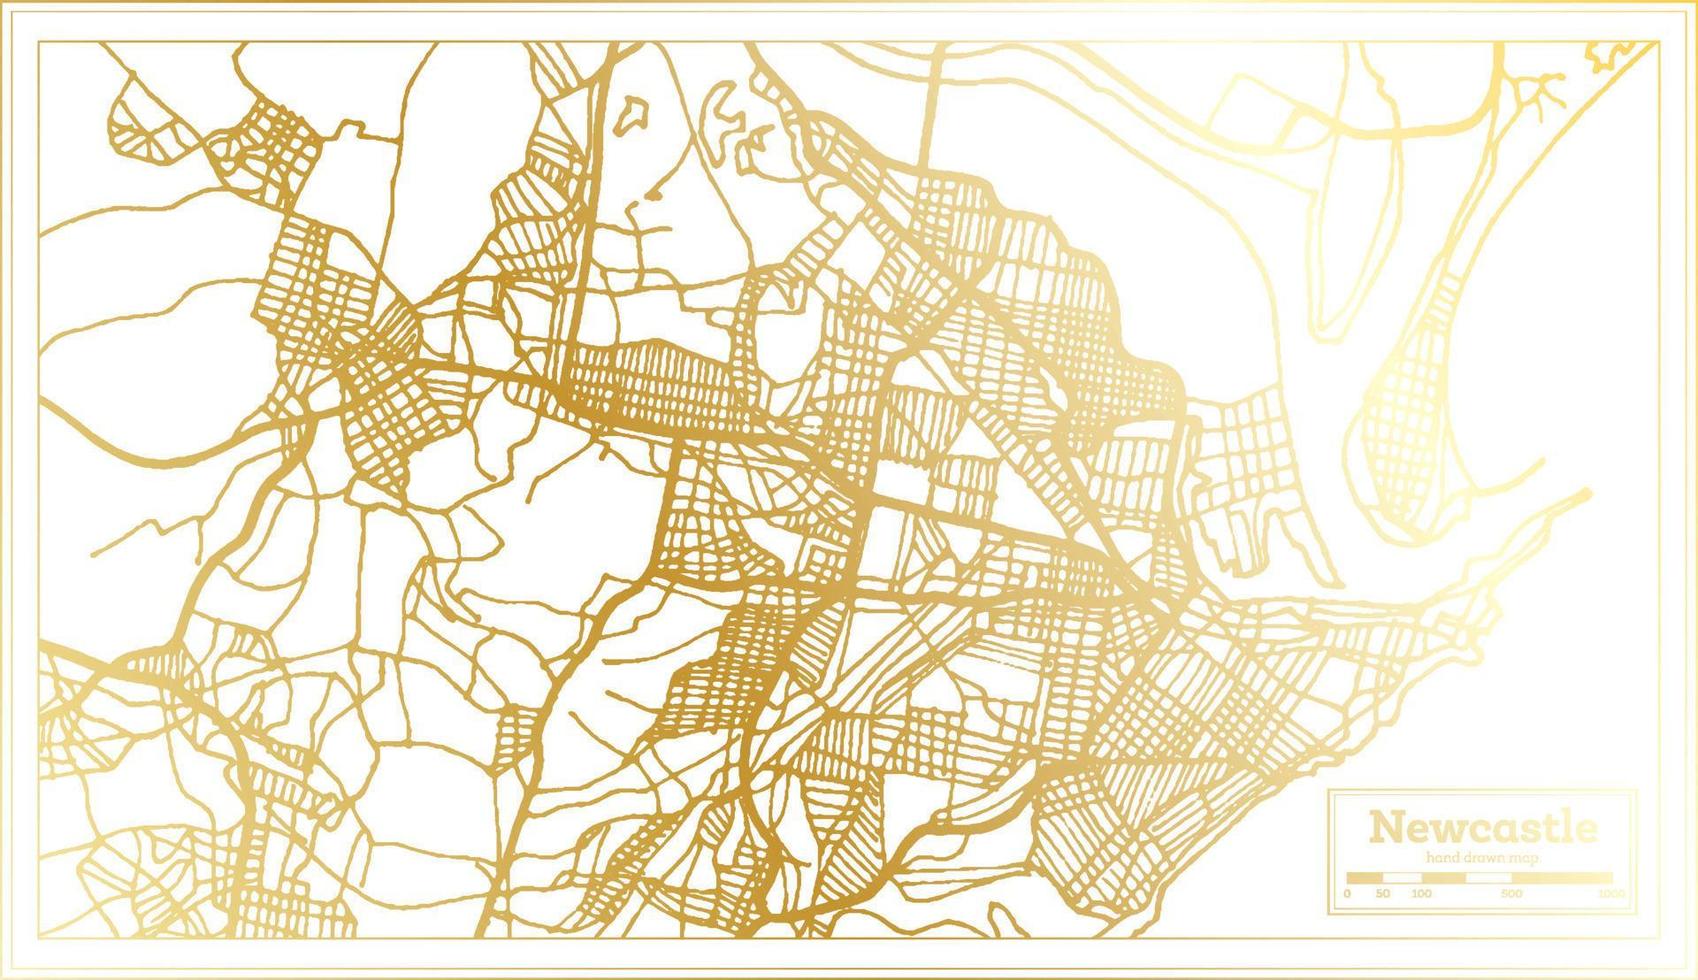 Newcastle Australië stad kaart in retro stijl in gouden kleur. schets kaart. vector